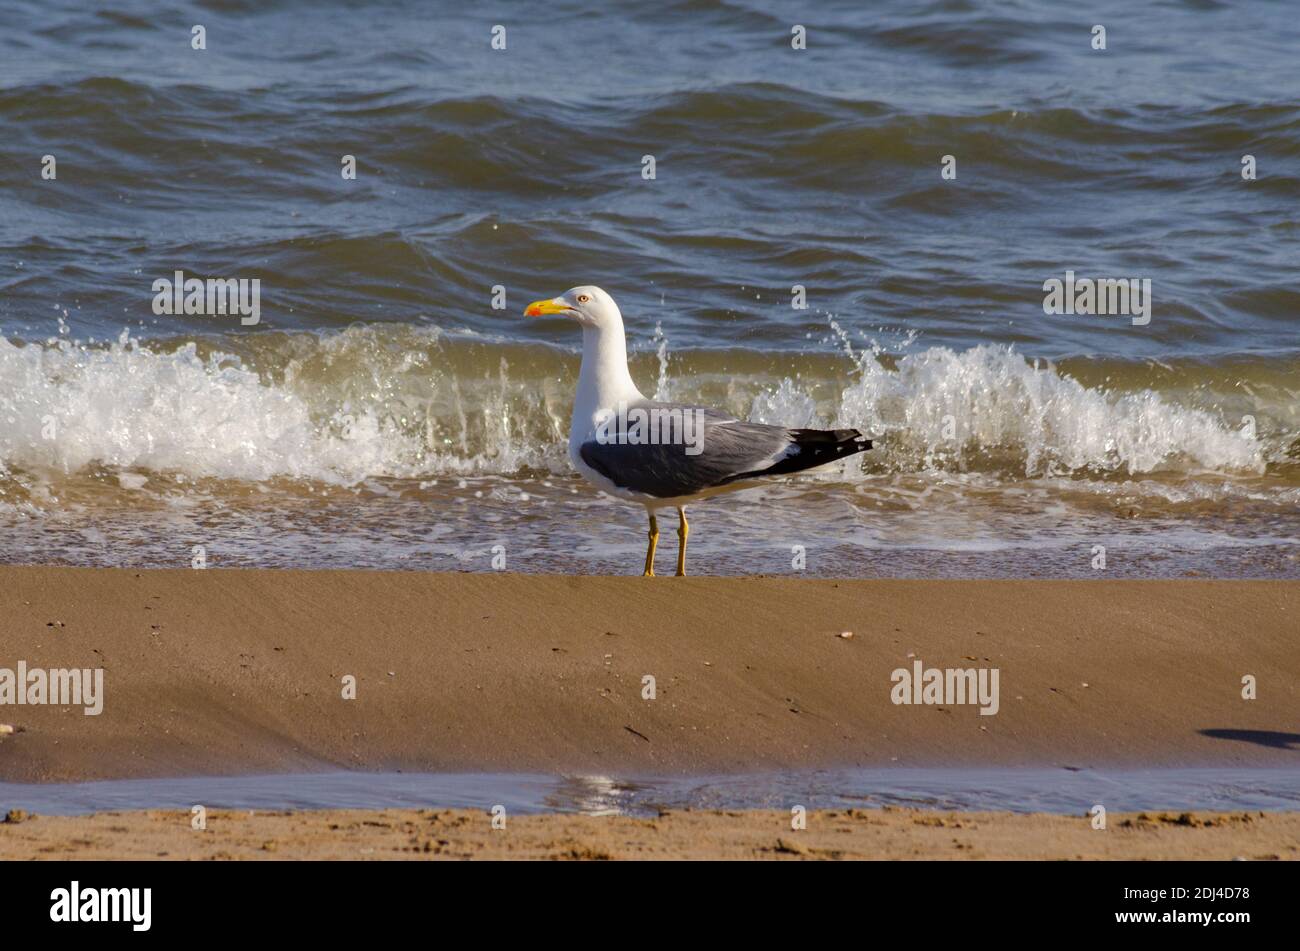 Yellow-legged gull ( Larus michahellis ) on a beach near Alexandroupoli, Evros, Greece - Photo: Geopix Stock Photo